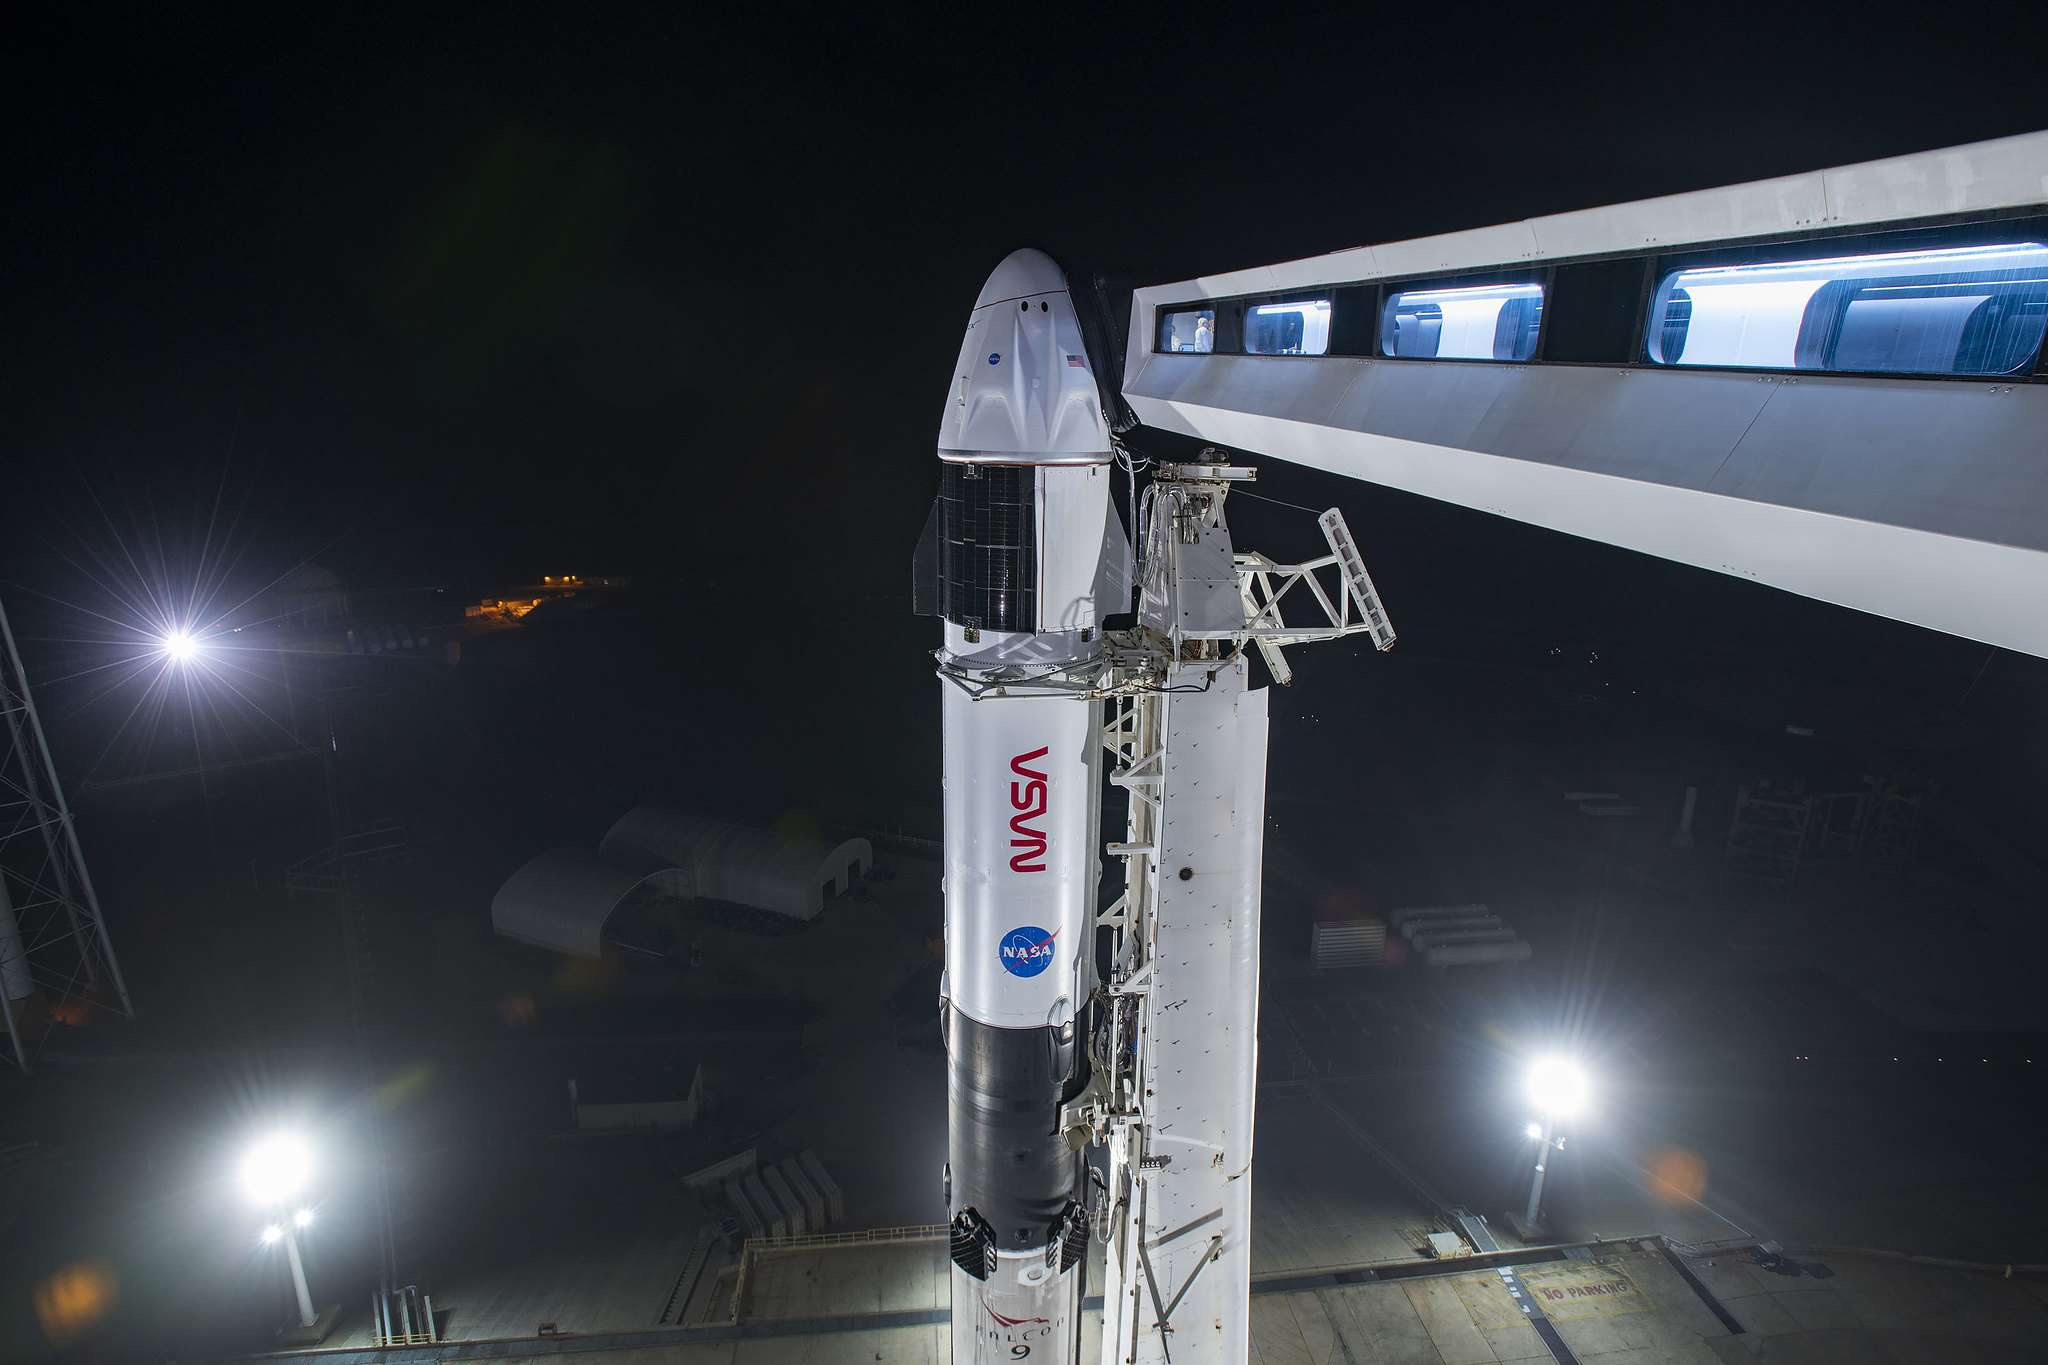 Фоторепортаж от SpaceX: запуск миссии Crew-2 на ракете Falcon 9